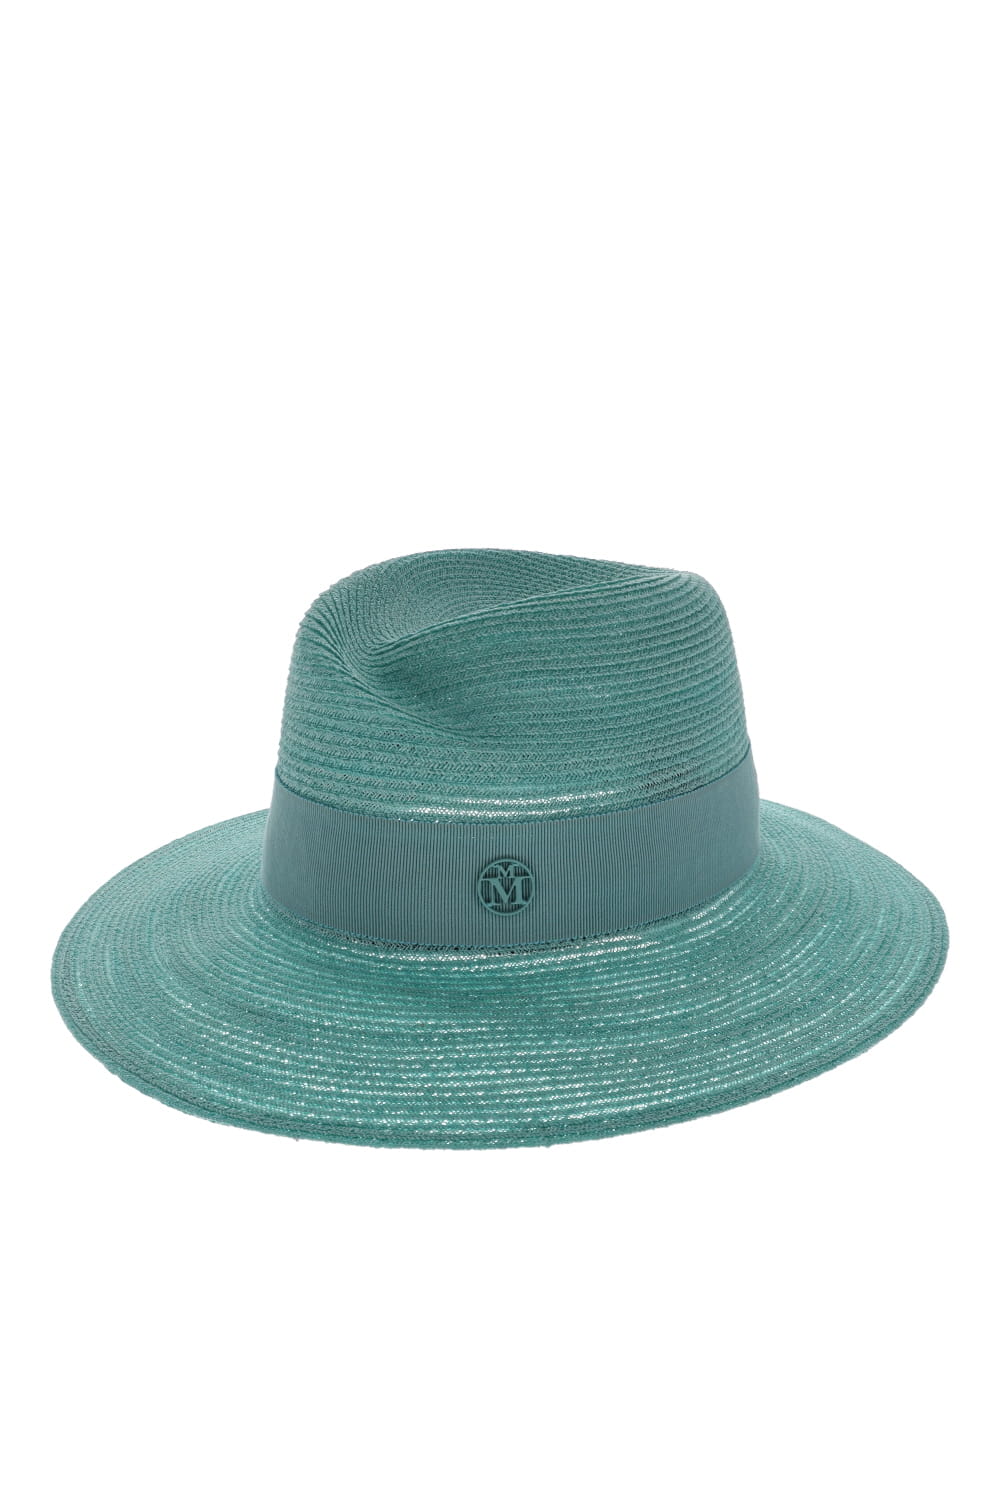 MAISON MICHEL Virginie Aqua Blue Straw Fedora Hat